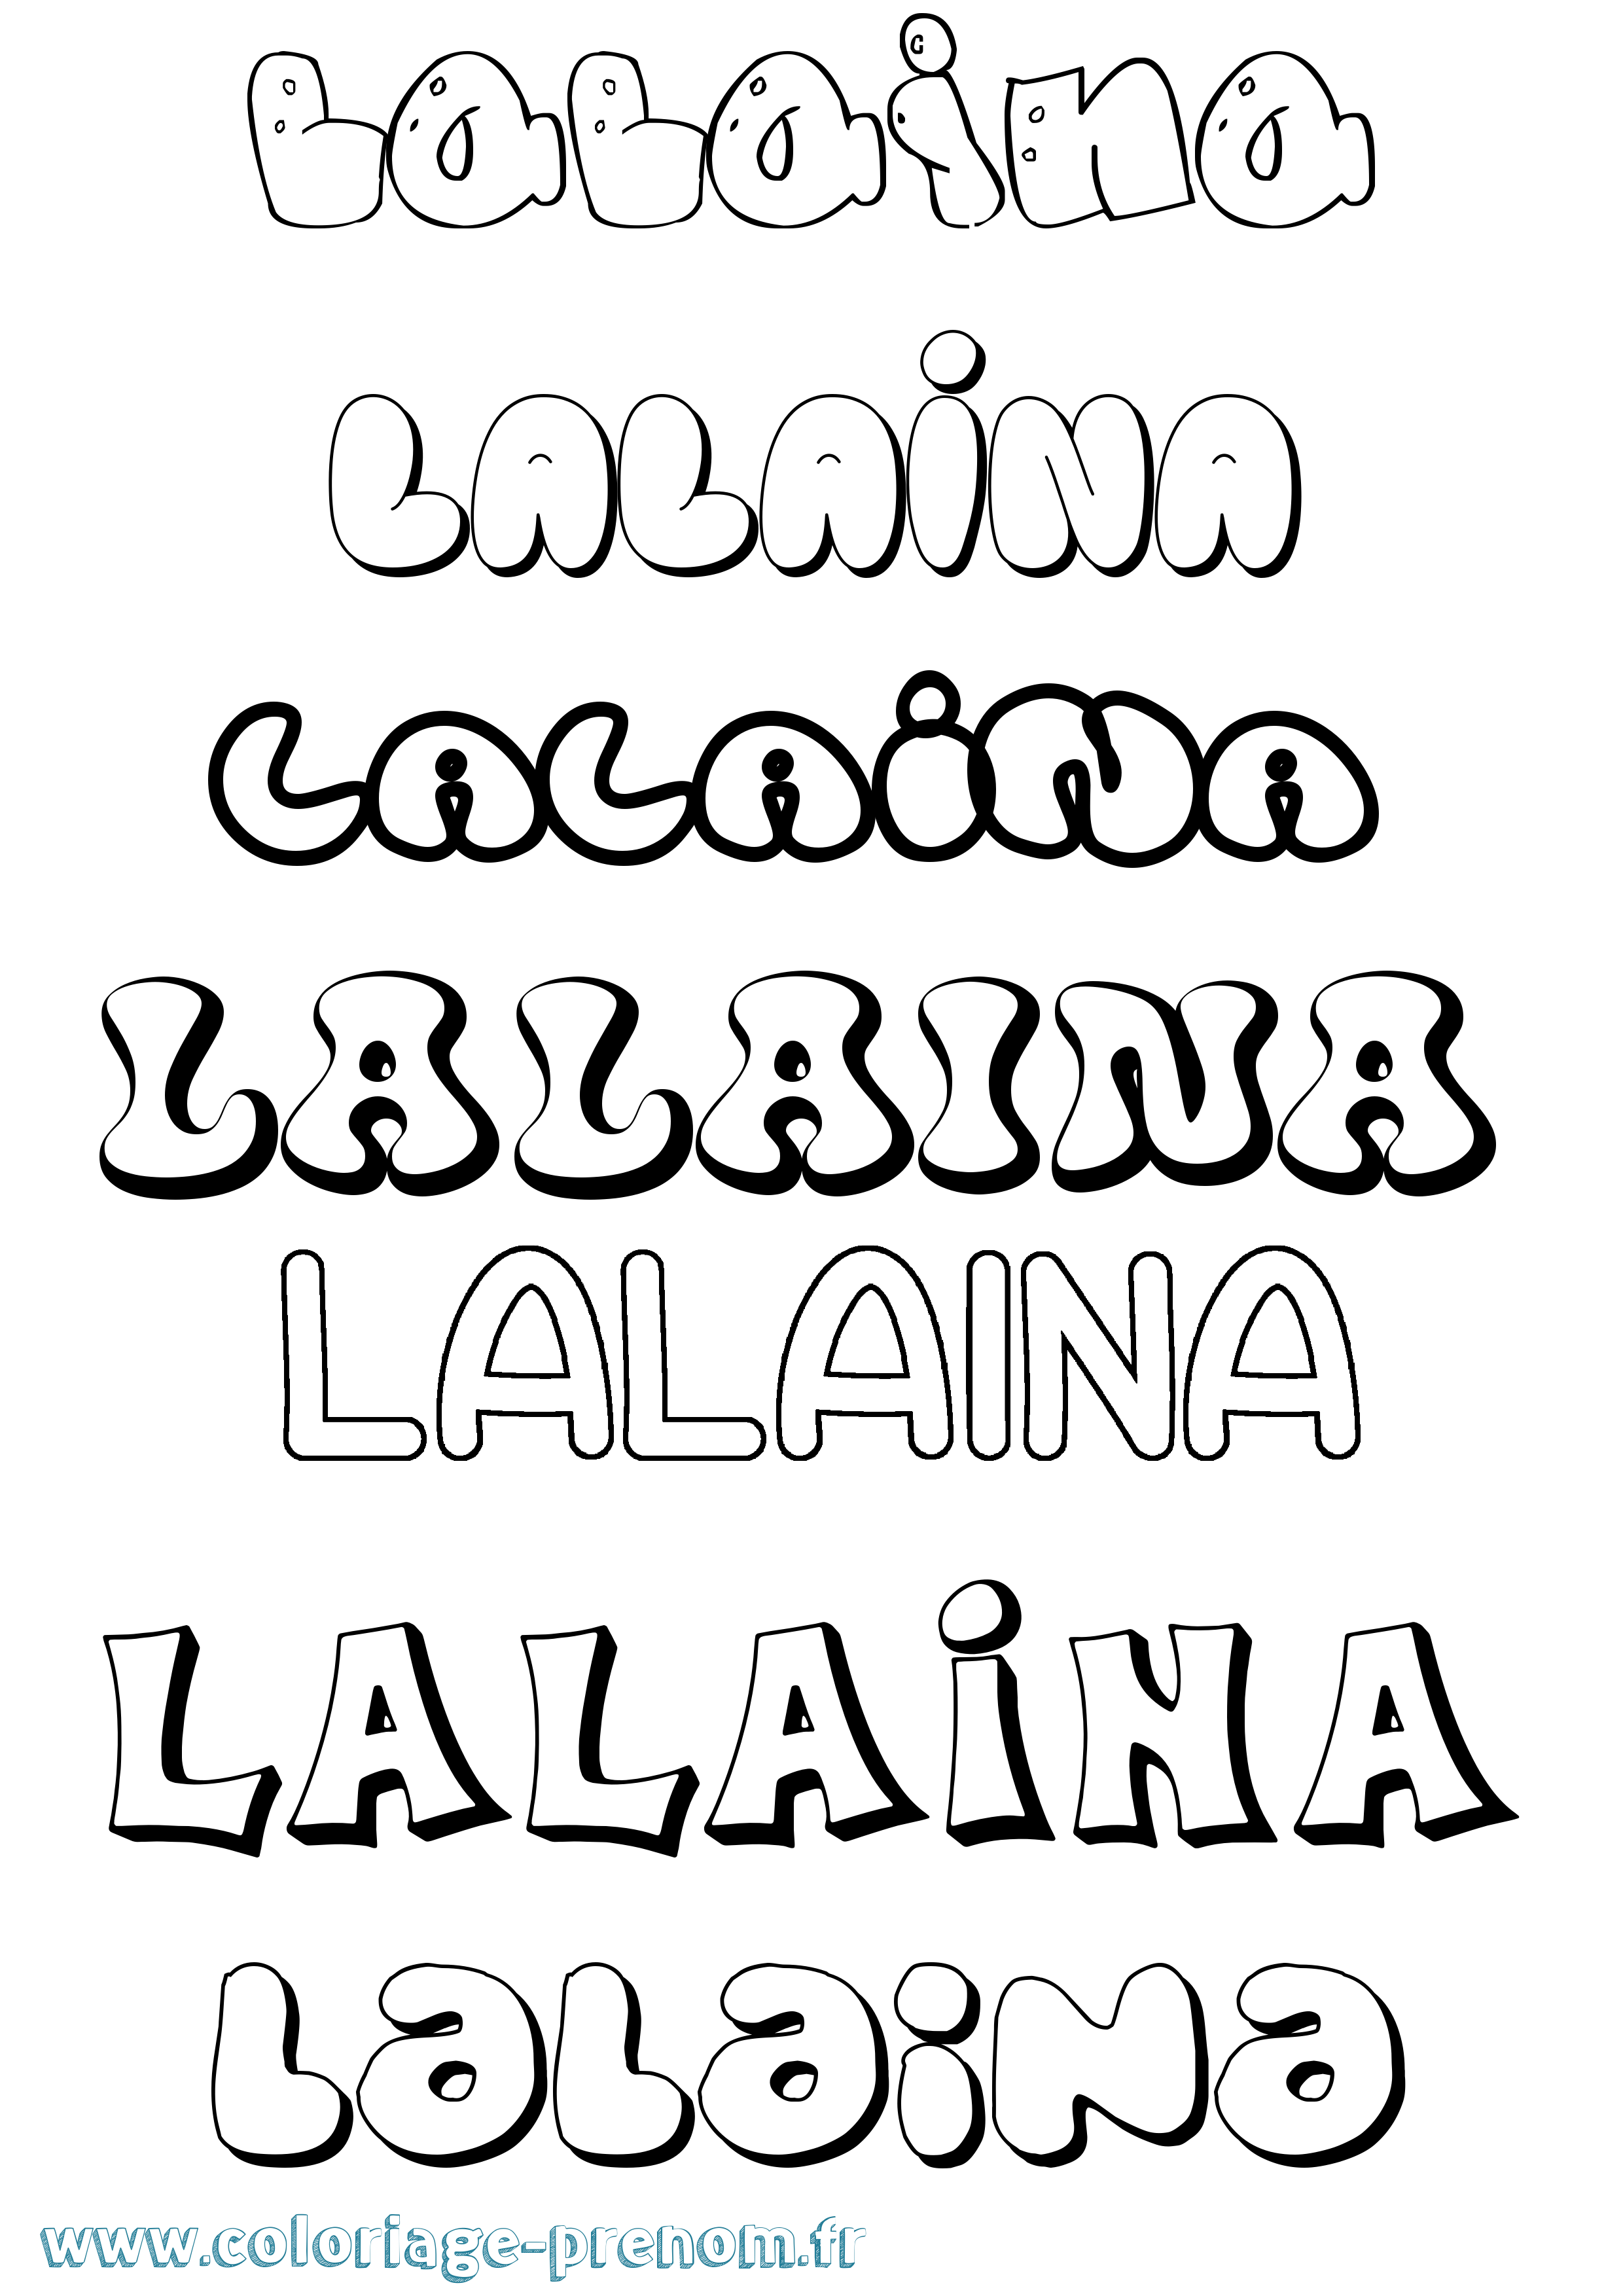 Coloriage prénom Lalaina Bubble